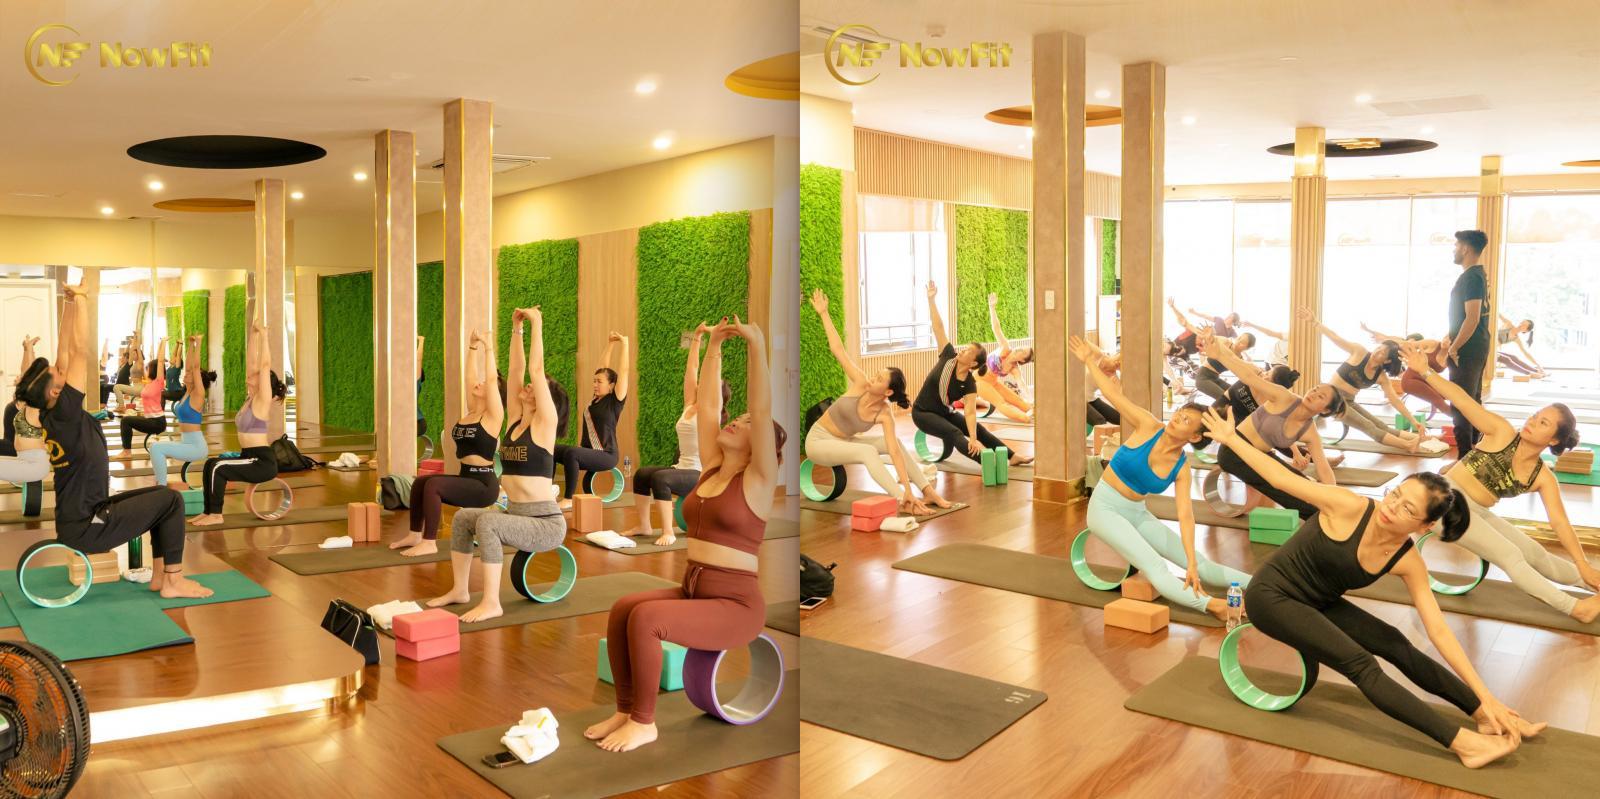 NowFit Yoga & Fitness Center | 261 Nguyễn Trọng Tuyển, P. 10, Quận Phú Nhuận, TP. HCM